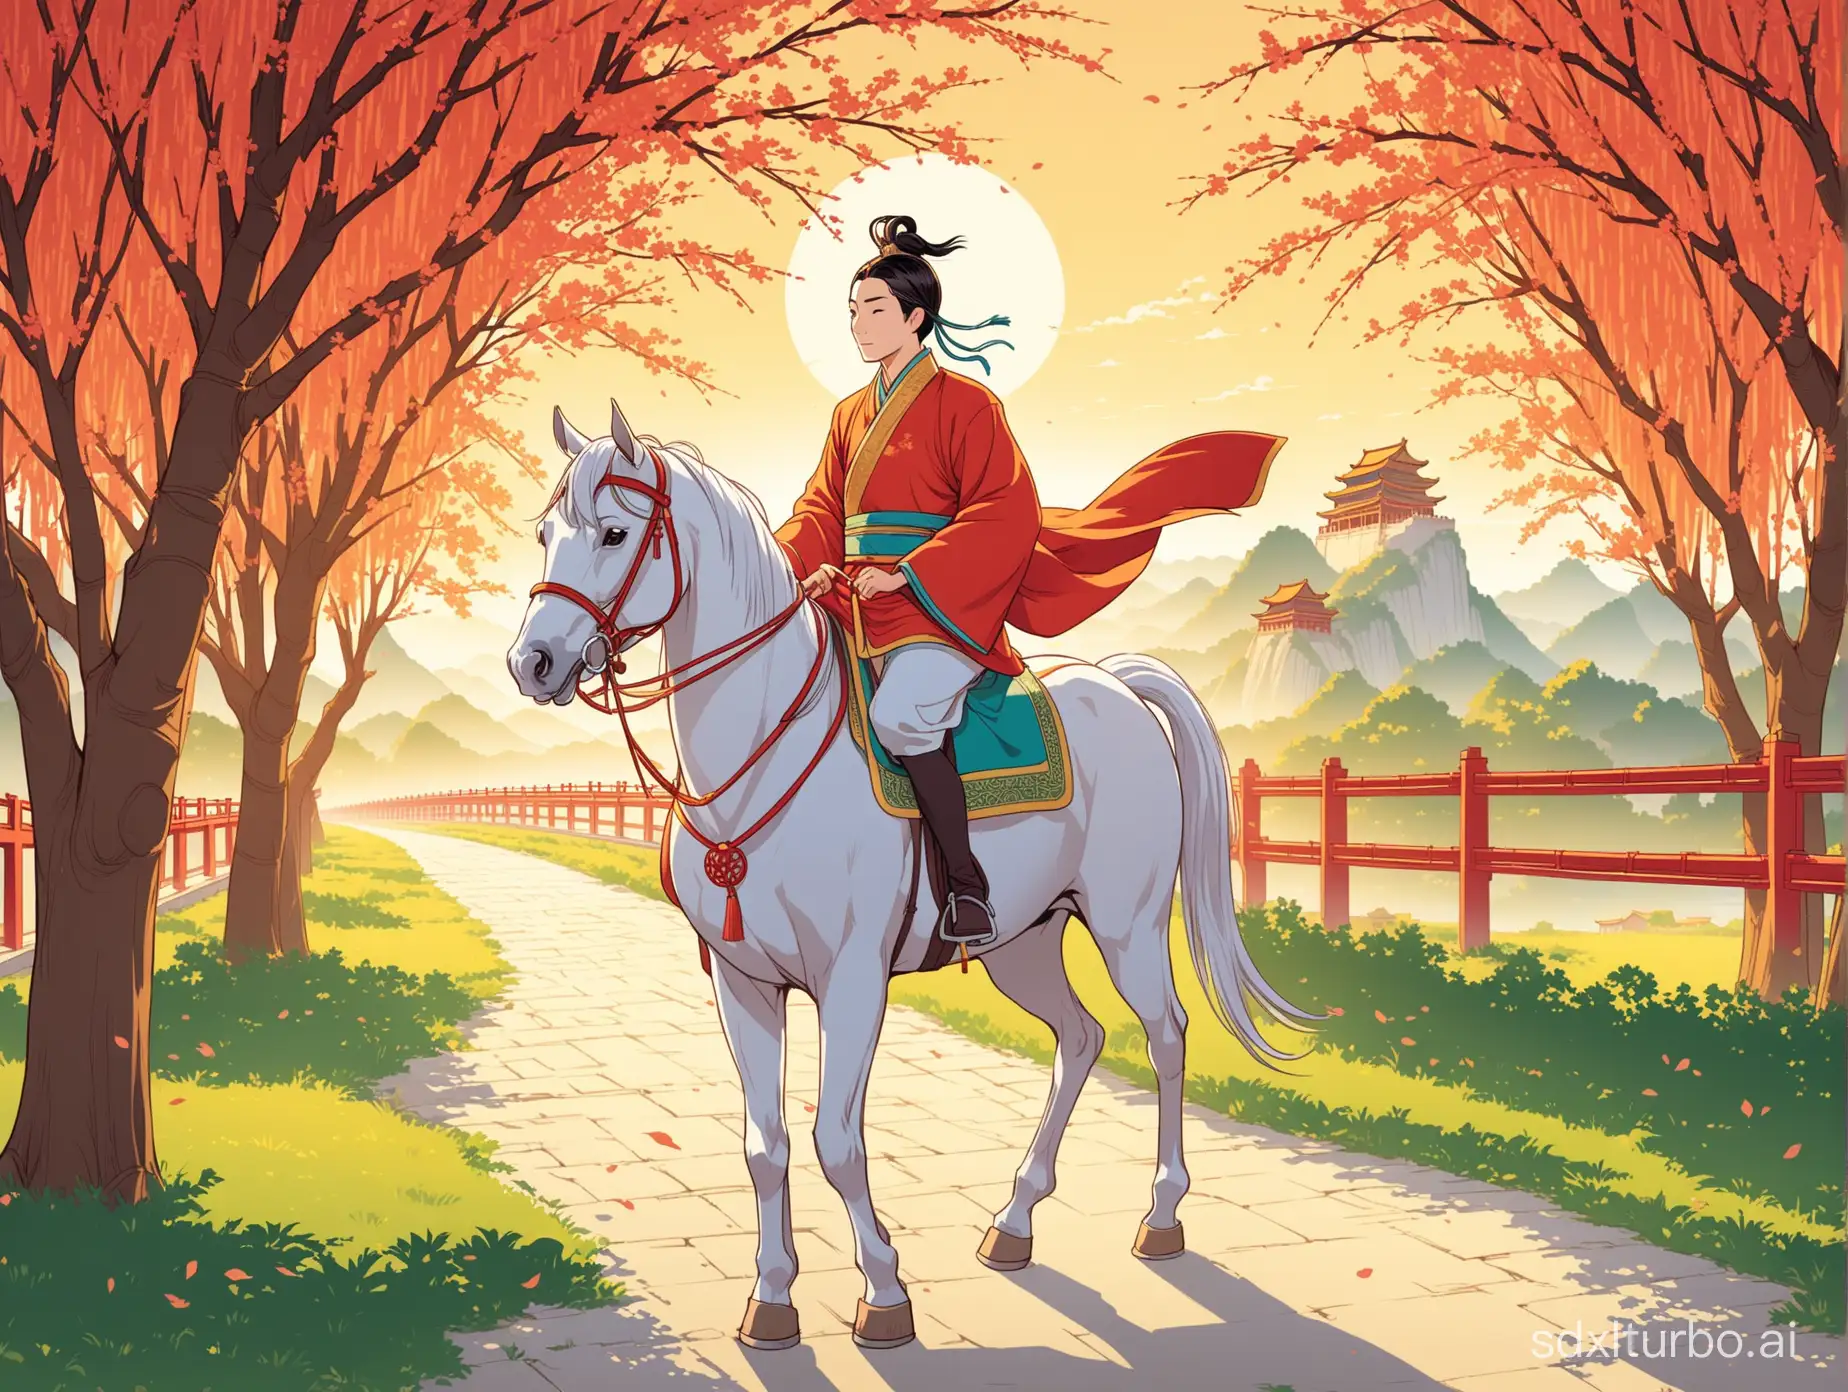 古时一个秀才进京赶考,骑着马,在路上,柳树,卡通,动漫